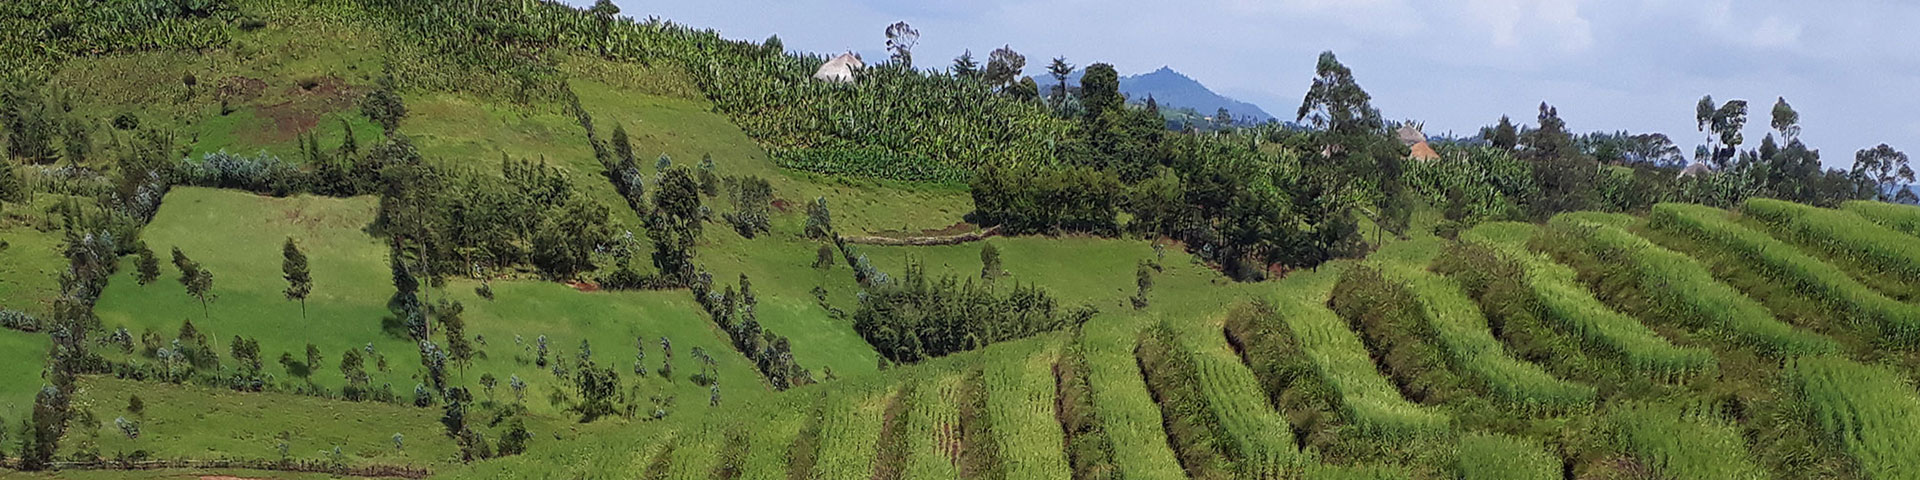 Grünes, landwirtschaftliches Feld mit Bäumen im Hintergrund.